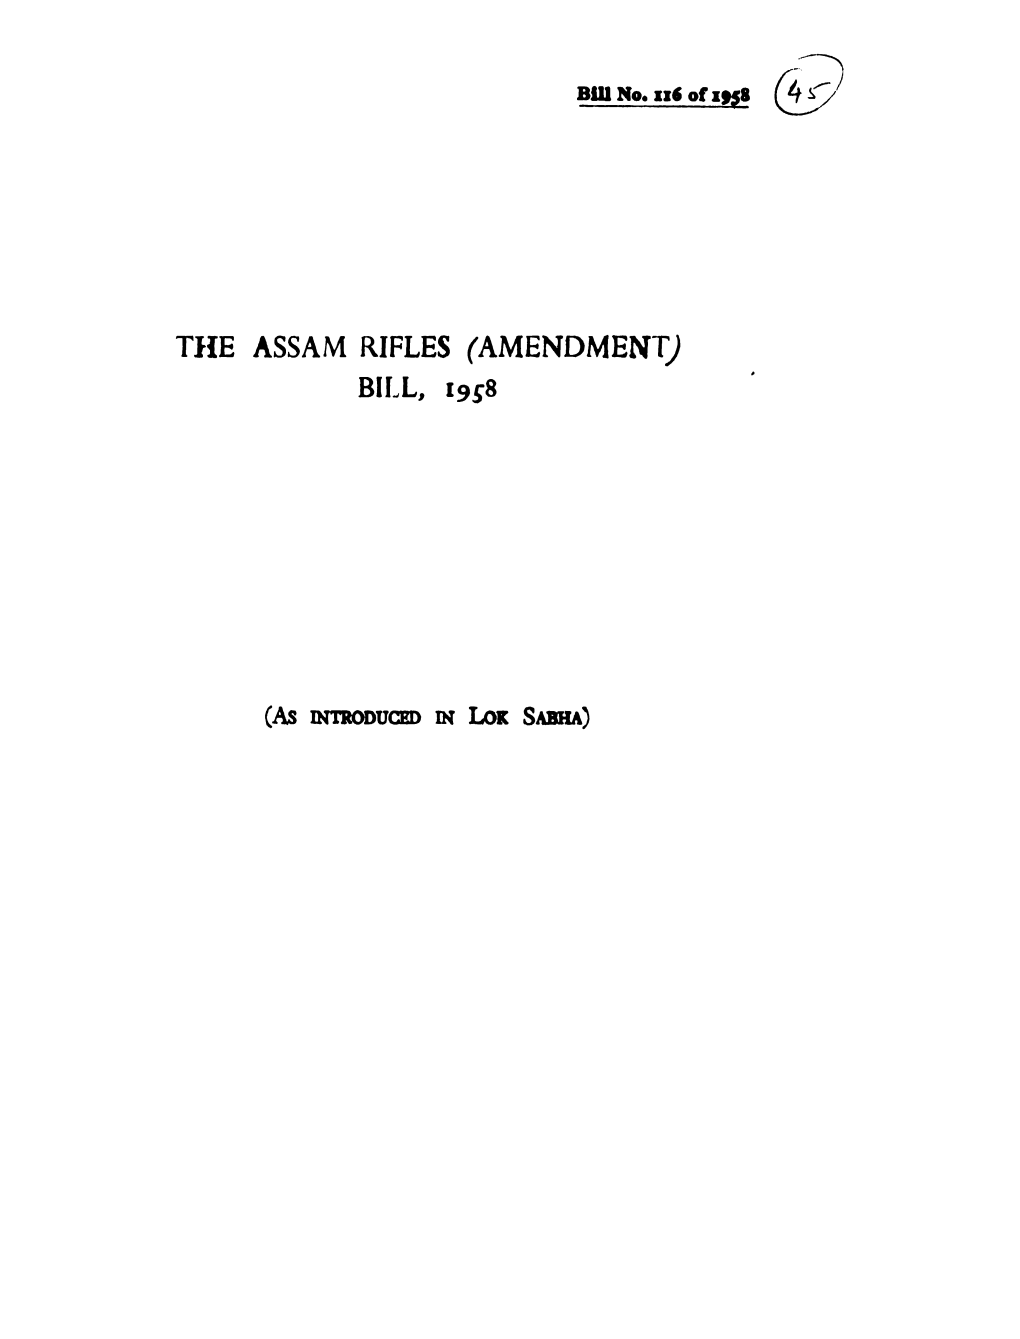 Tile ASSAM RIFLES (AMENDMENT) BILL, 19S8